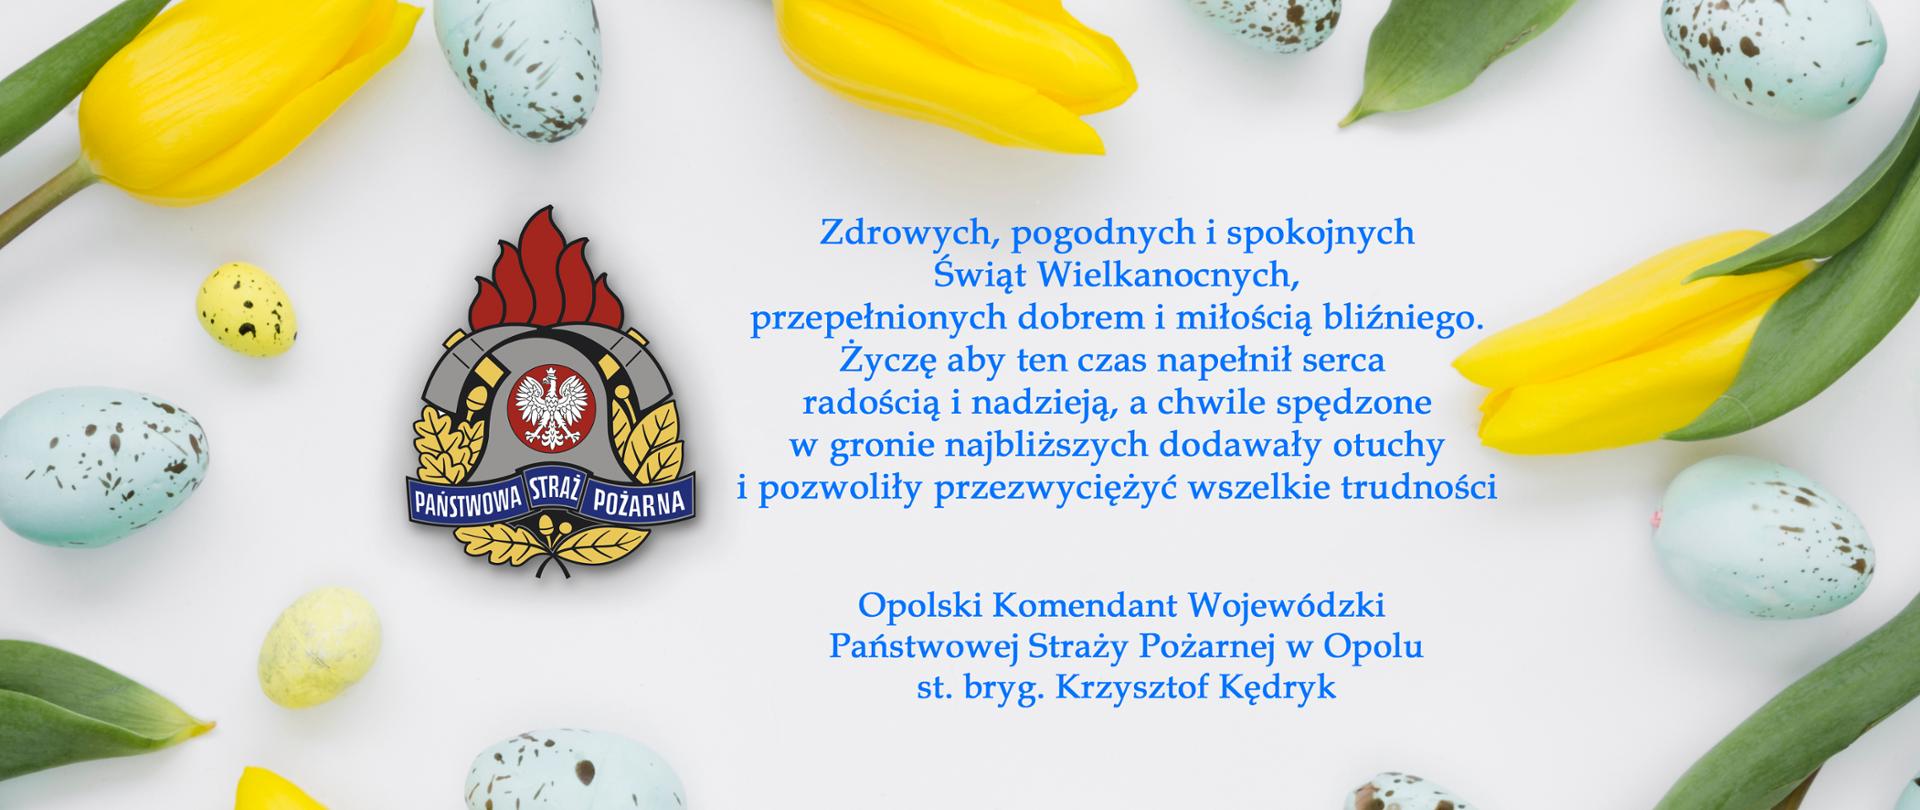 Kartka świąteczna z życzeniami, na białym tle logo PSP, żółte tulipany oraz jajka.